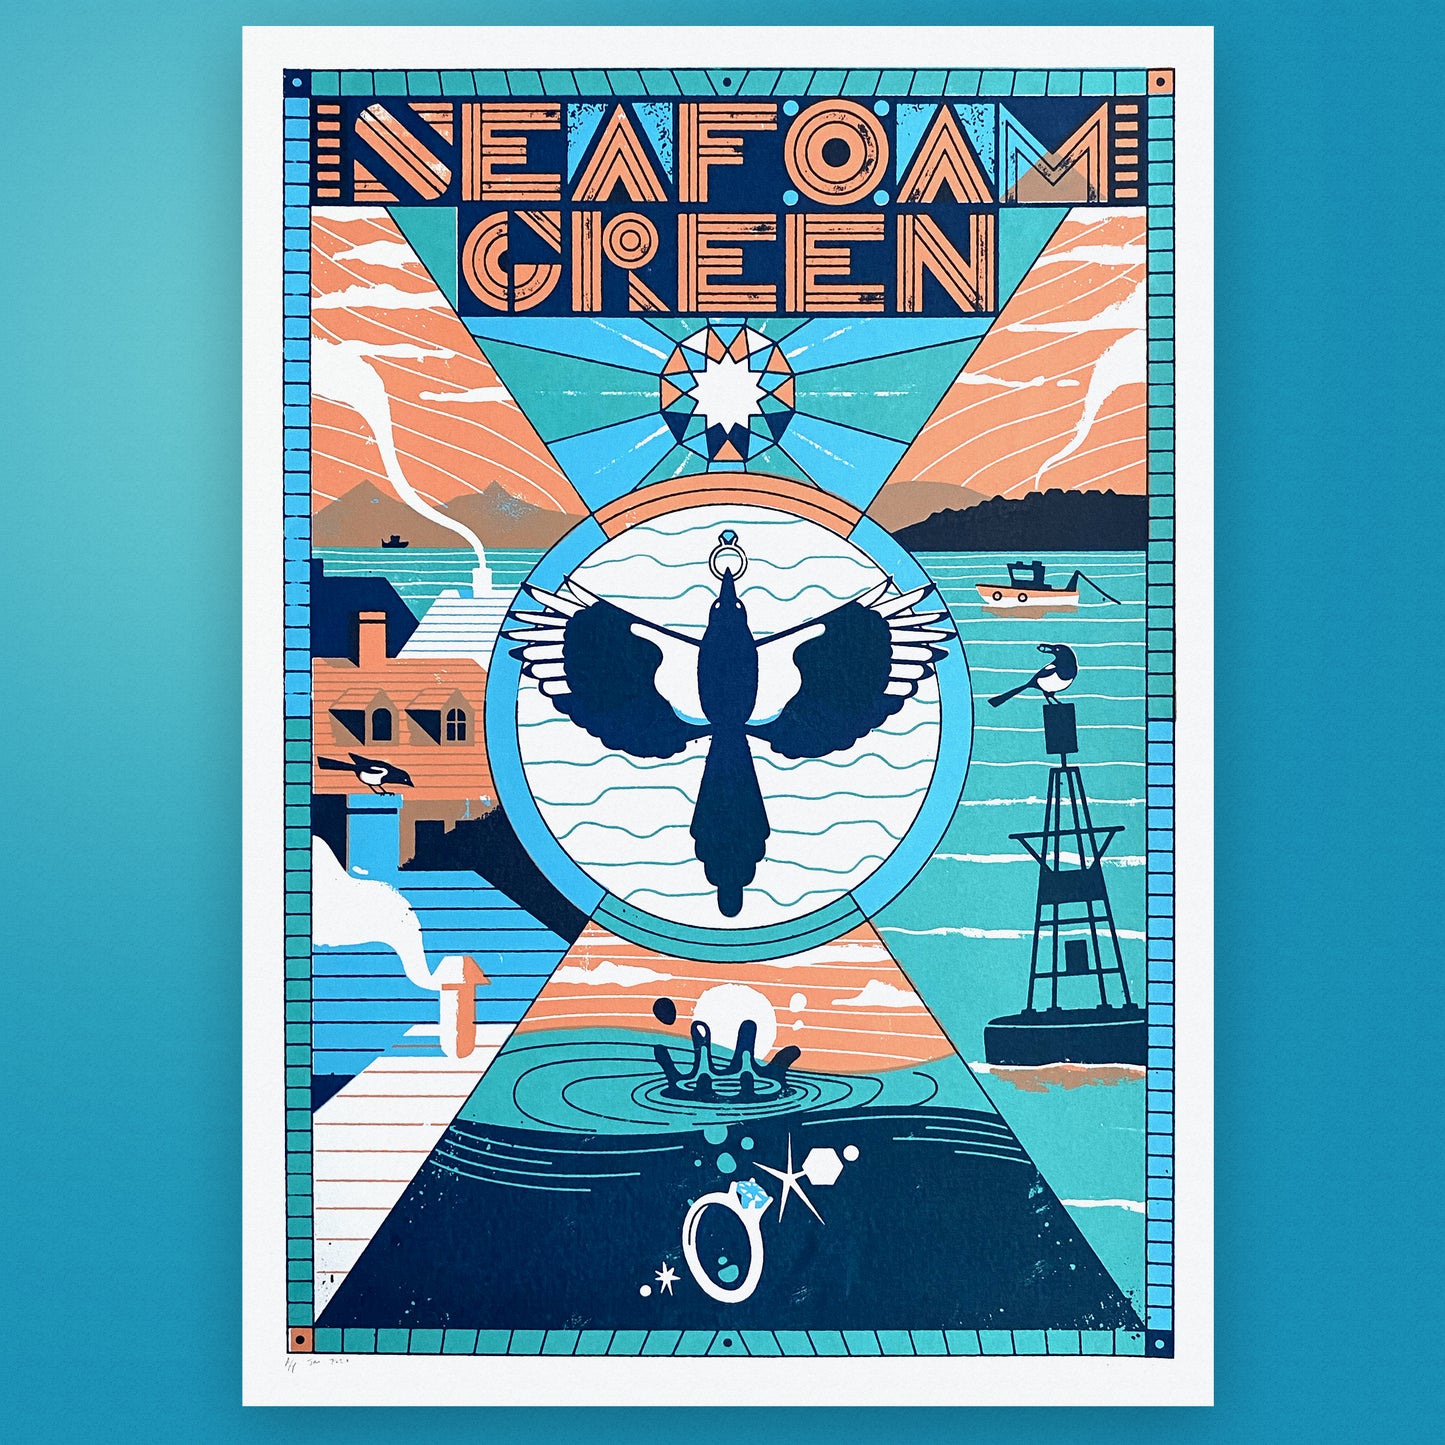 Seafoam Green - 2018